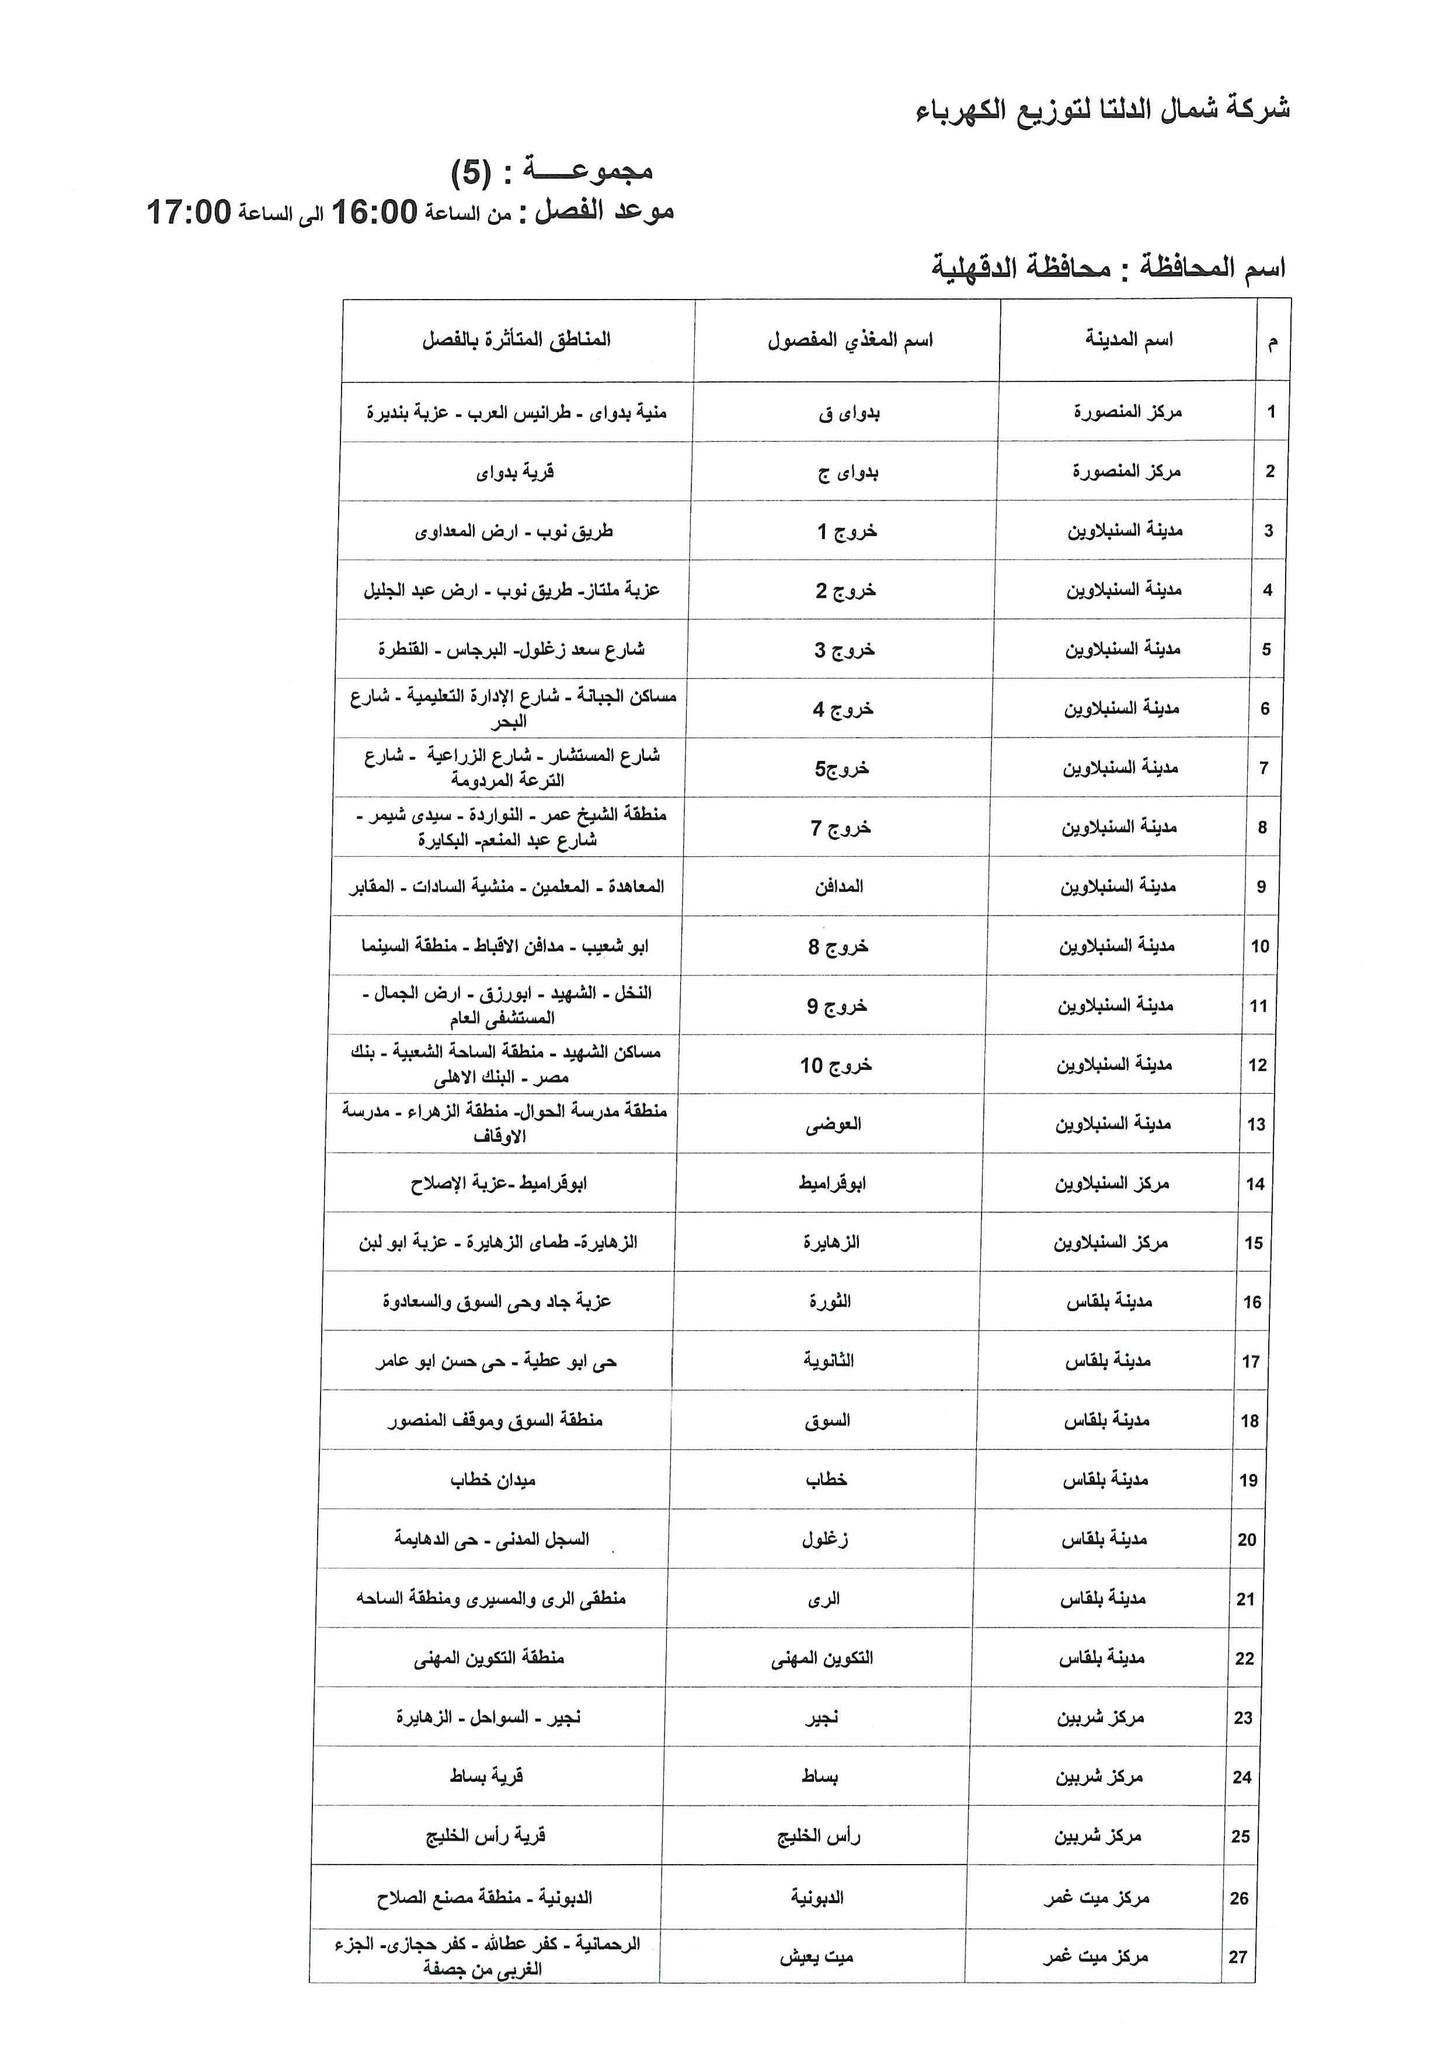 الإعلان عن خطة تخفيف أحمال الكهرباء فى محافظة الدقهلية 8